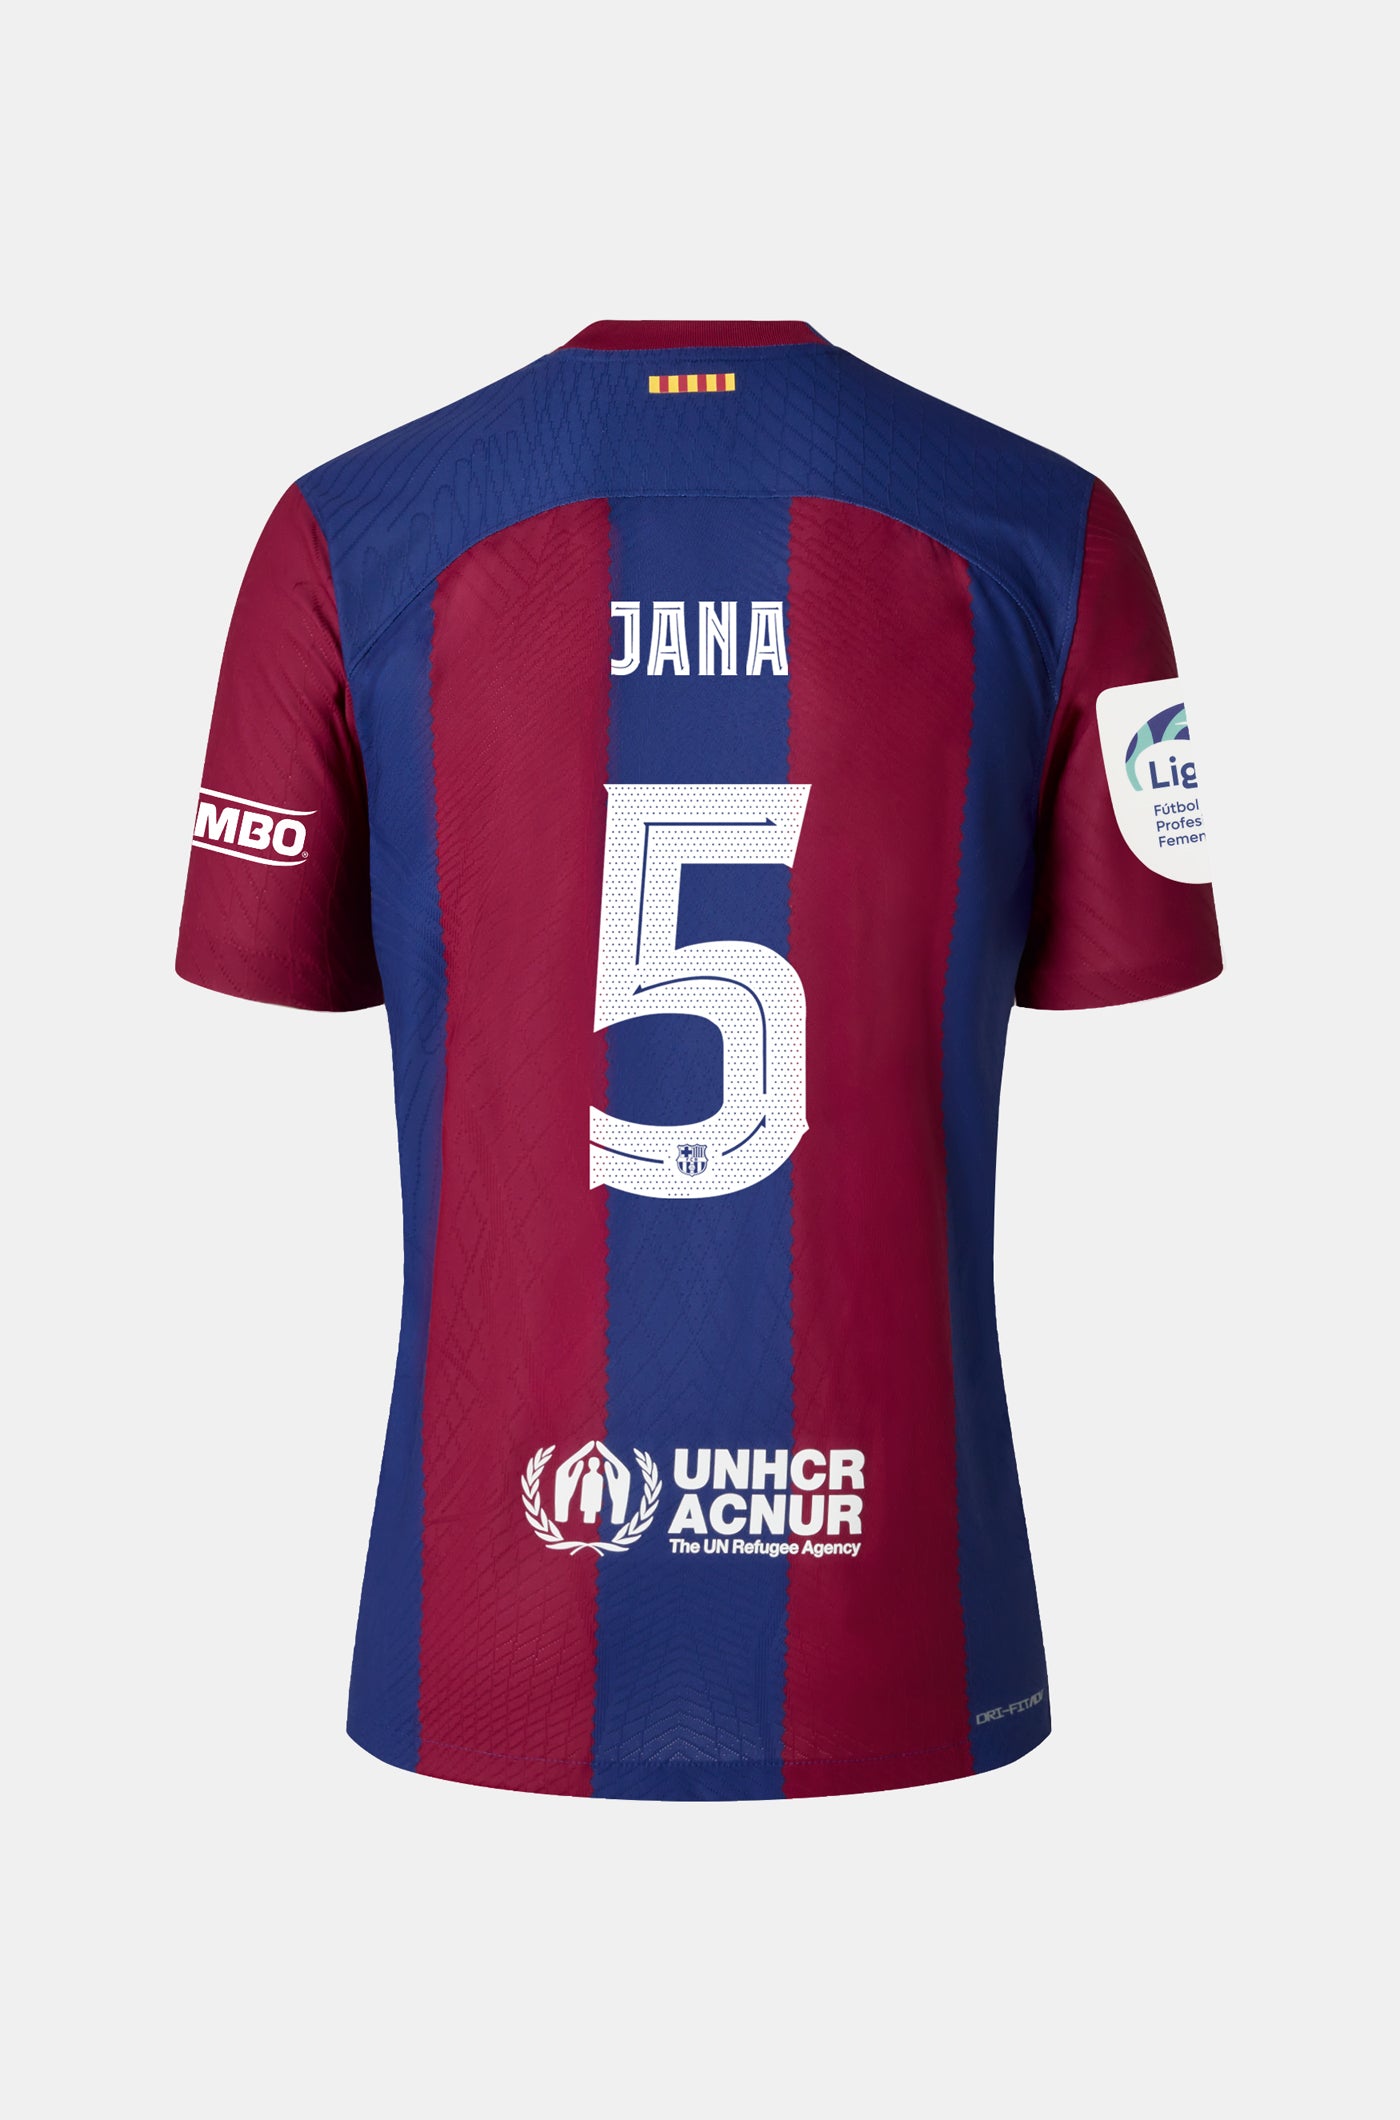 Liga F FC Barcelona home shirt 23/24 - Women - JANA